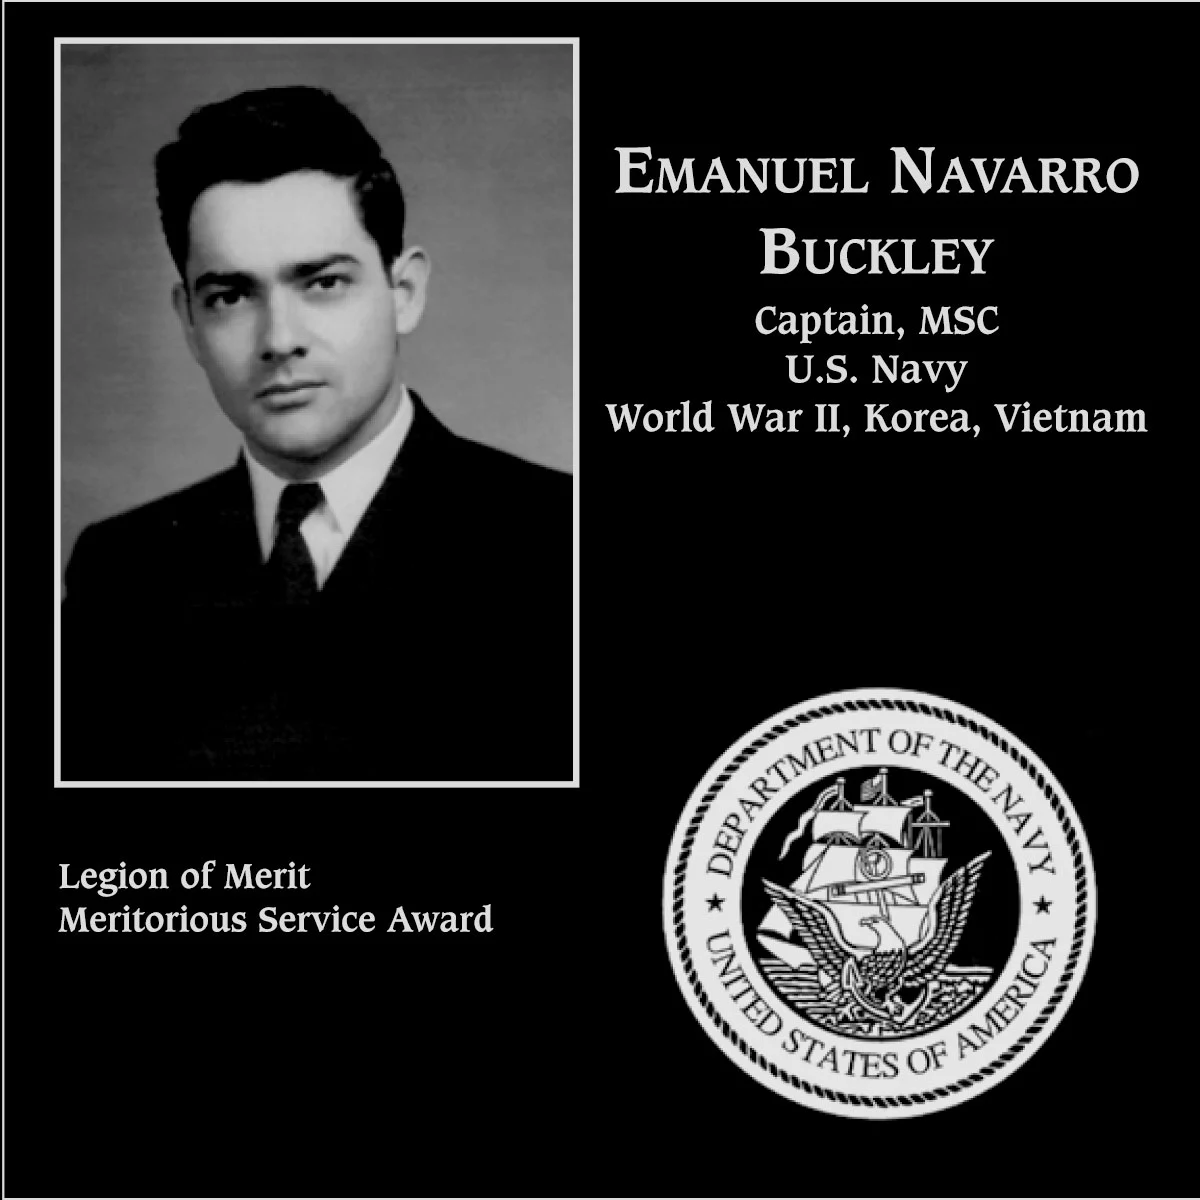 Emanuel Navarro Buckley